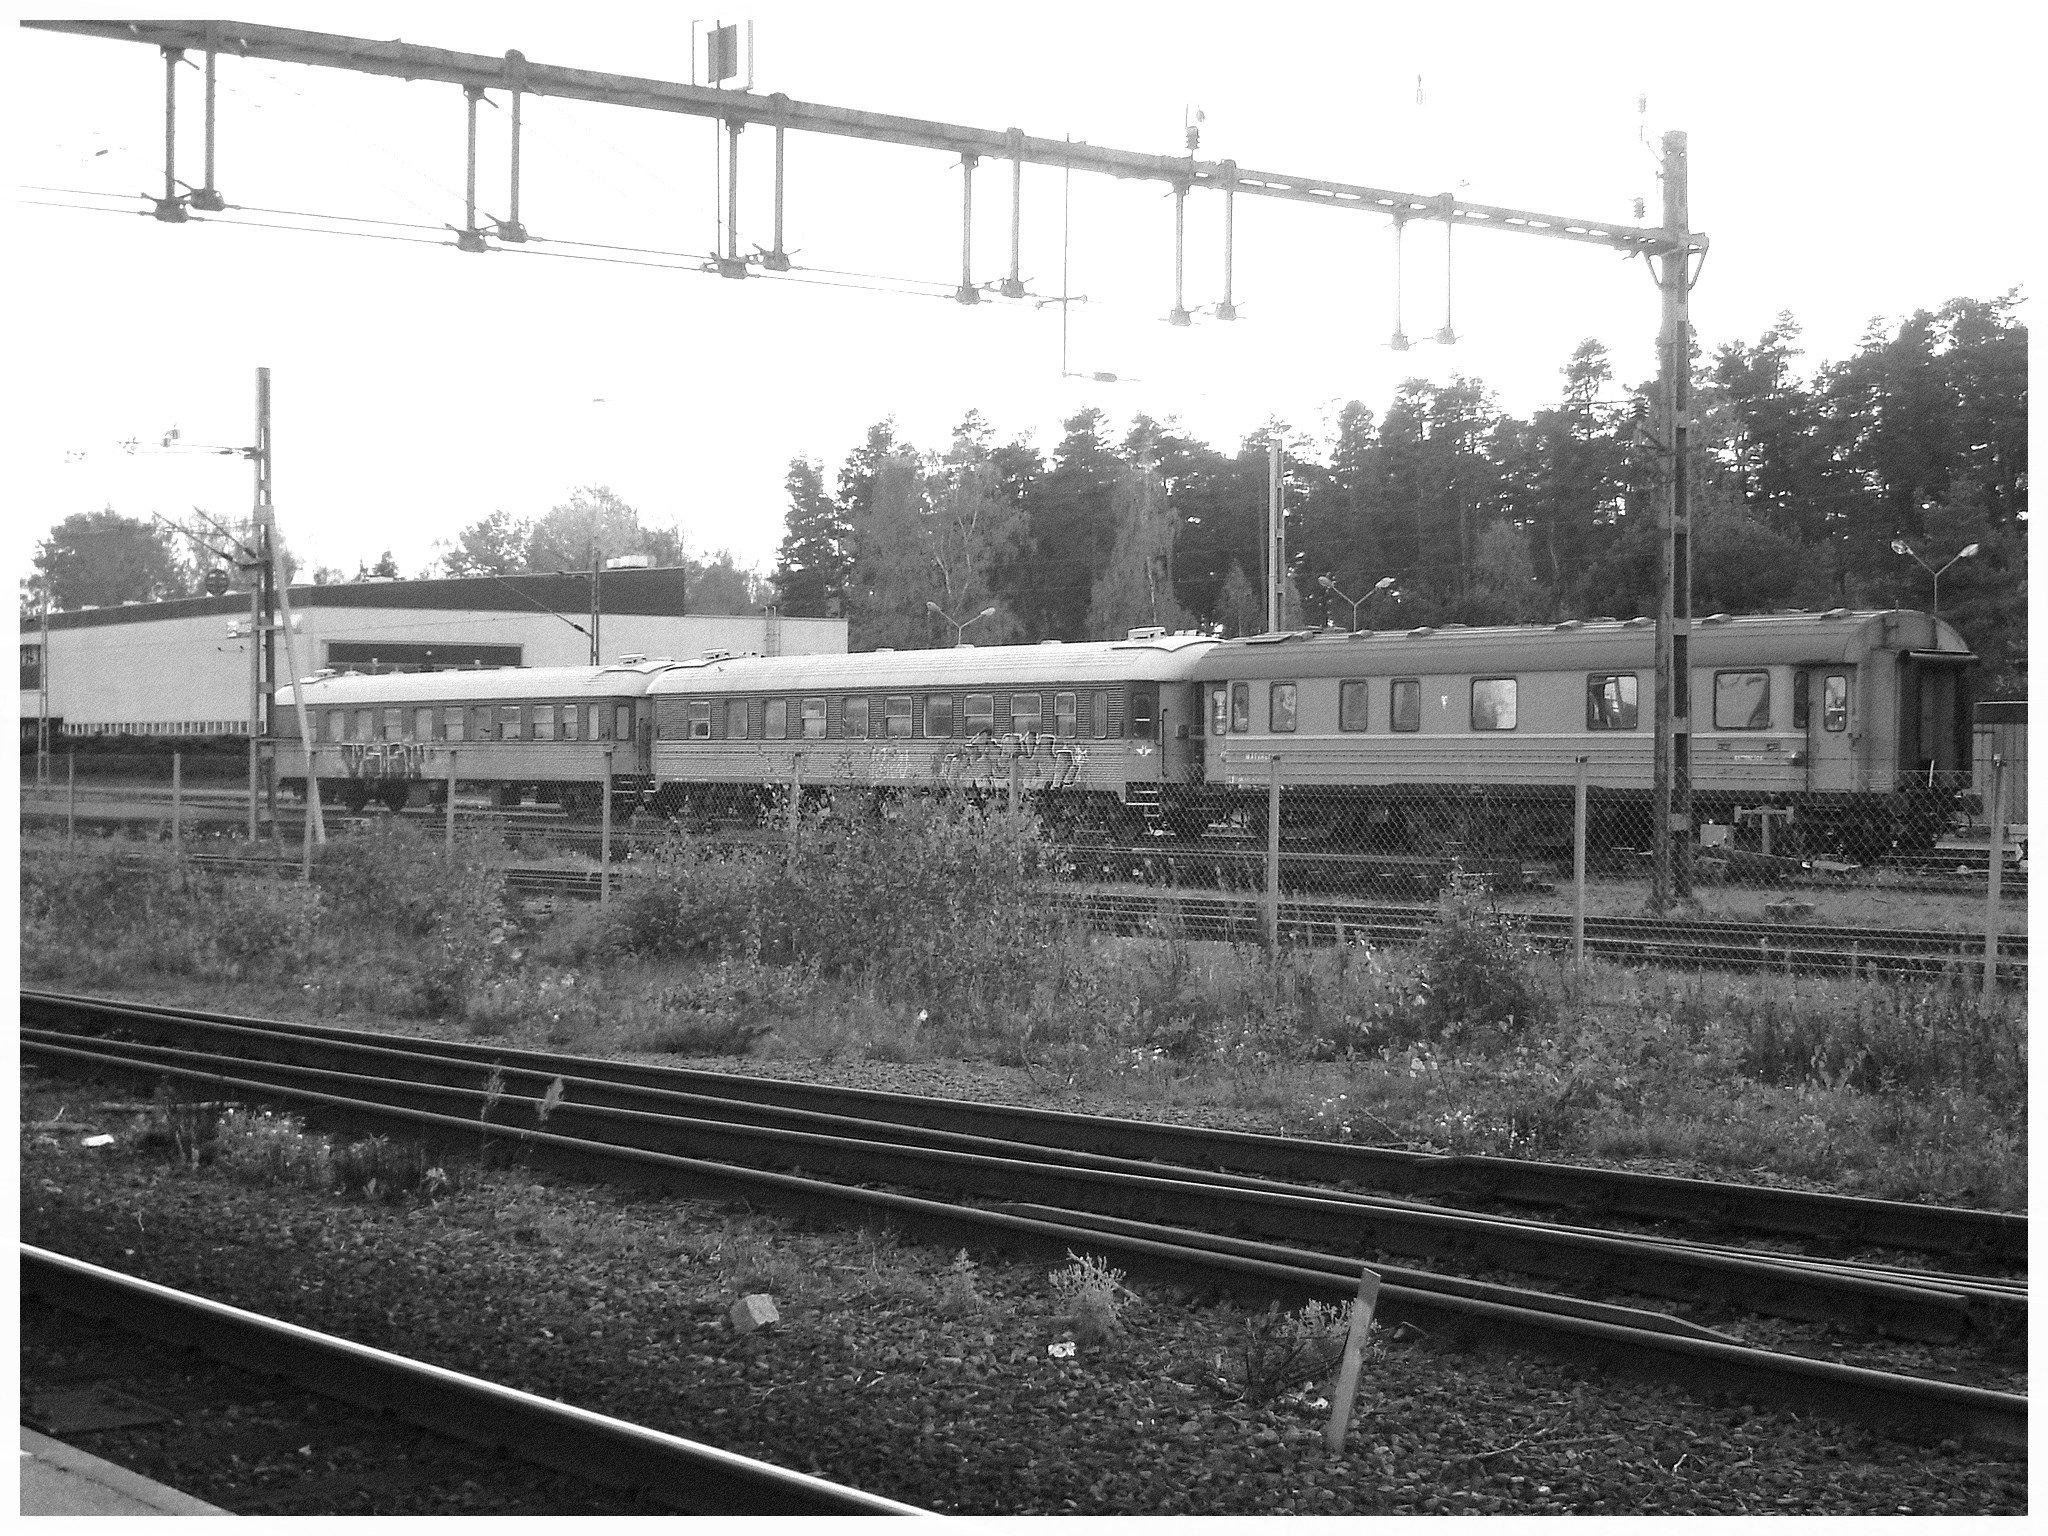 Duo de wagons bleus /   Blue wagons duo  -  Ängelholm /  Suède / Sweden  -  23 octobre 2008 / Noir et blanc - B & W.